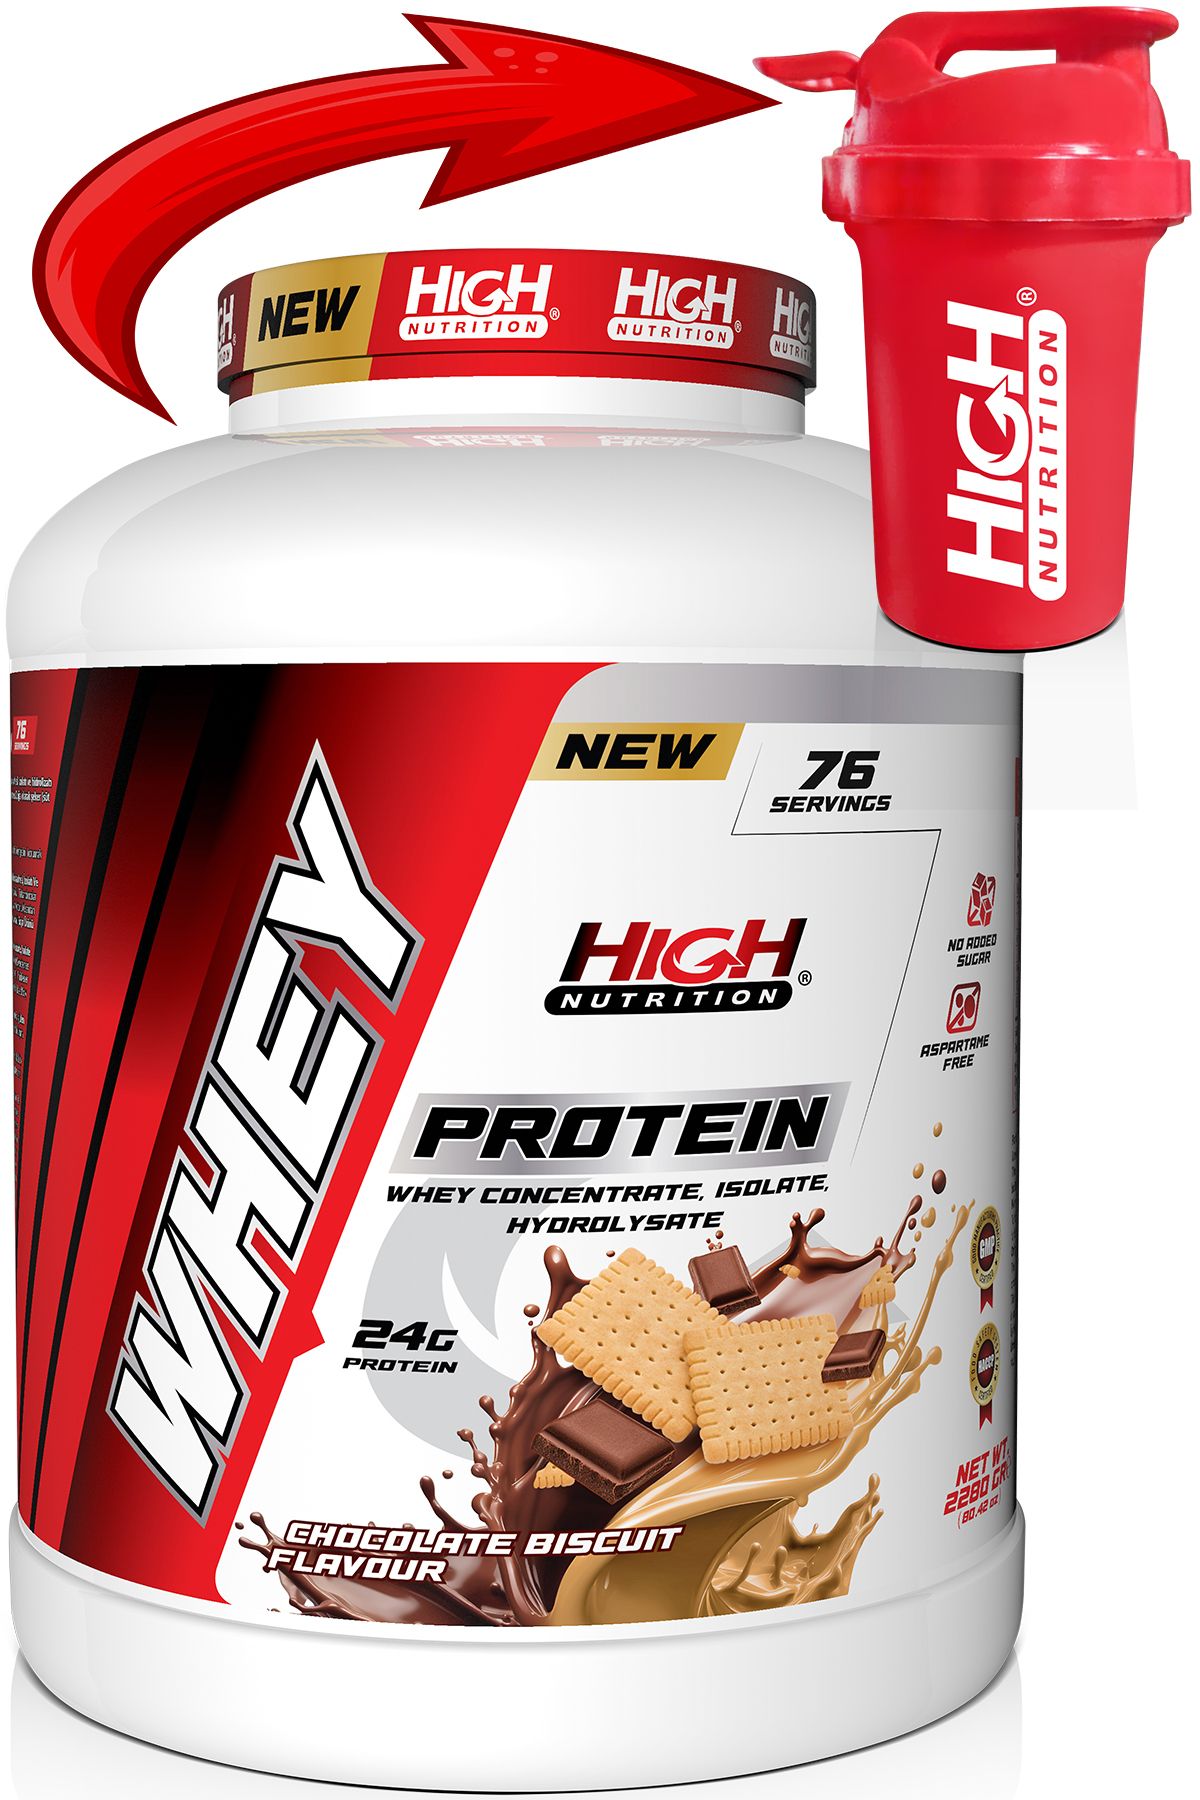 High Nutrition Protein Tozu 2280 Gr Çikolata Bisküvi Aromalı Whey Protein 24 Gram Protein 76 Servis Shaker Hediye